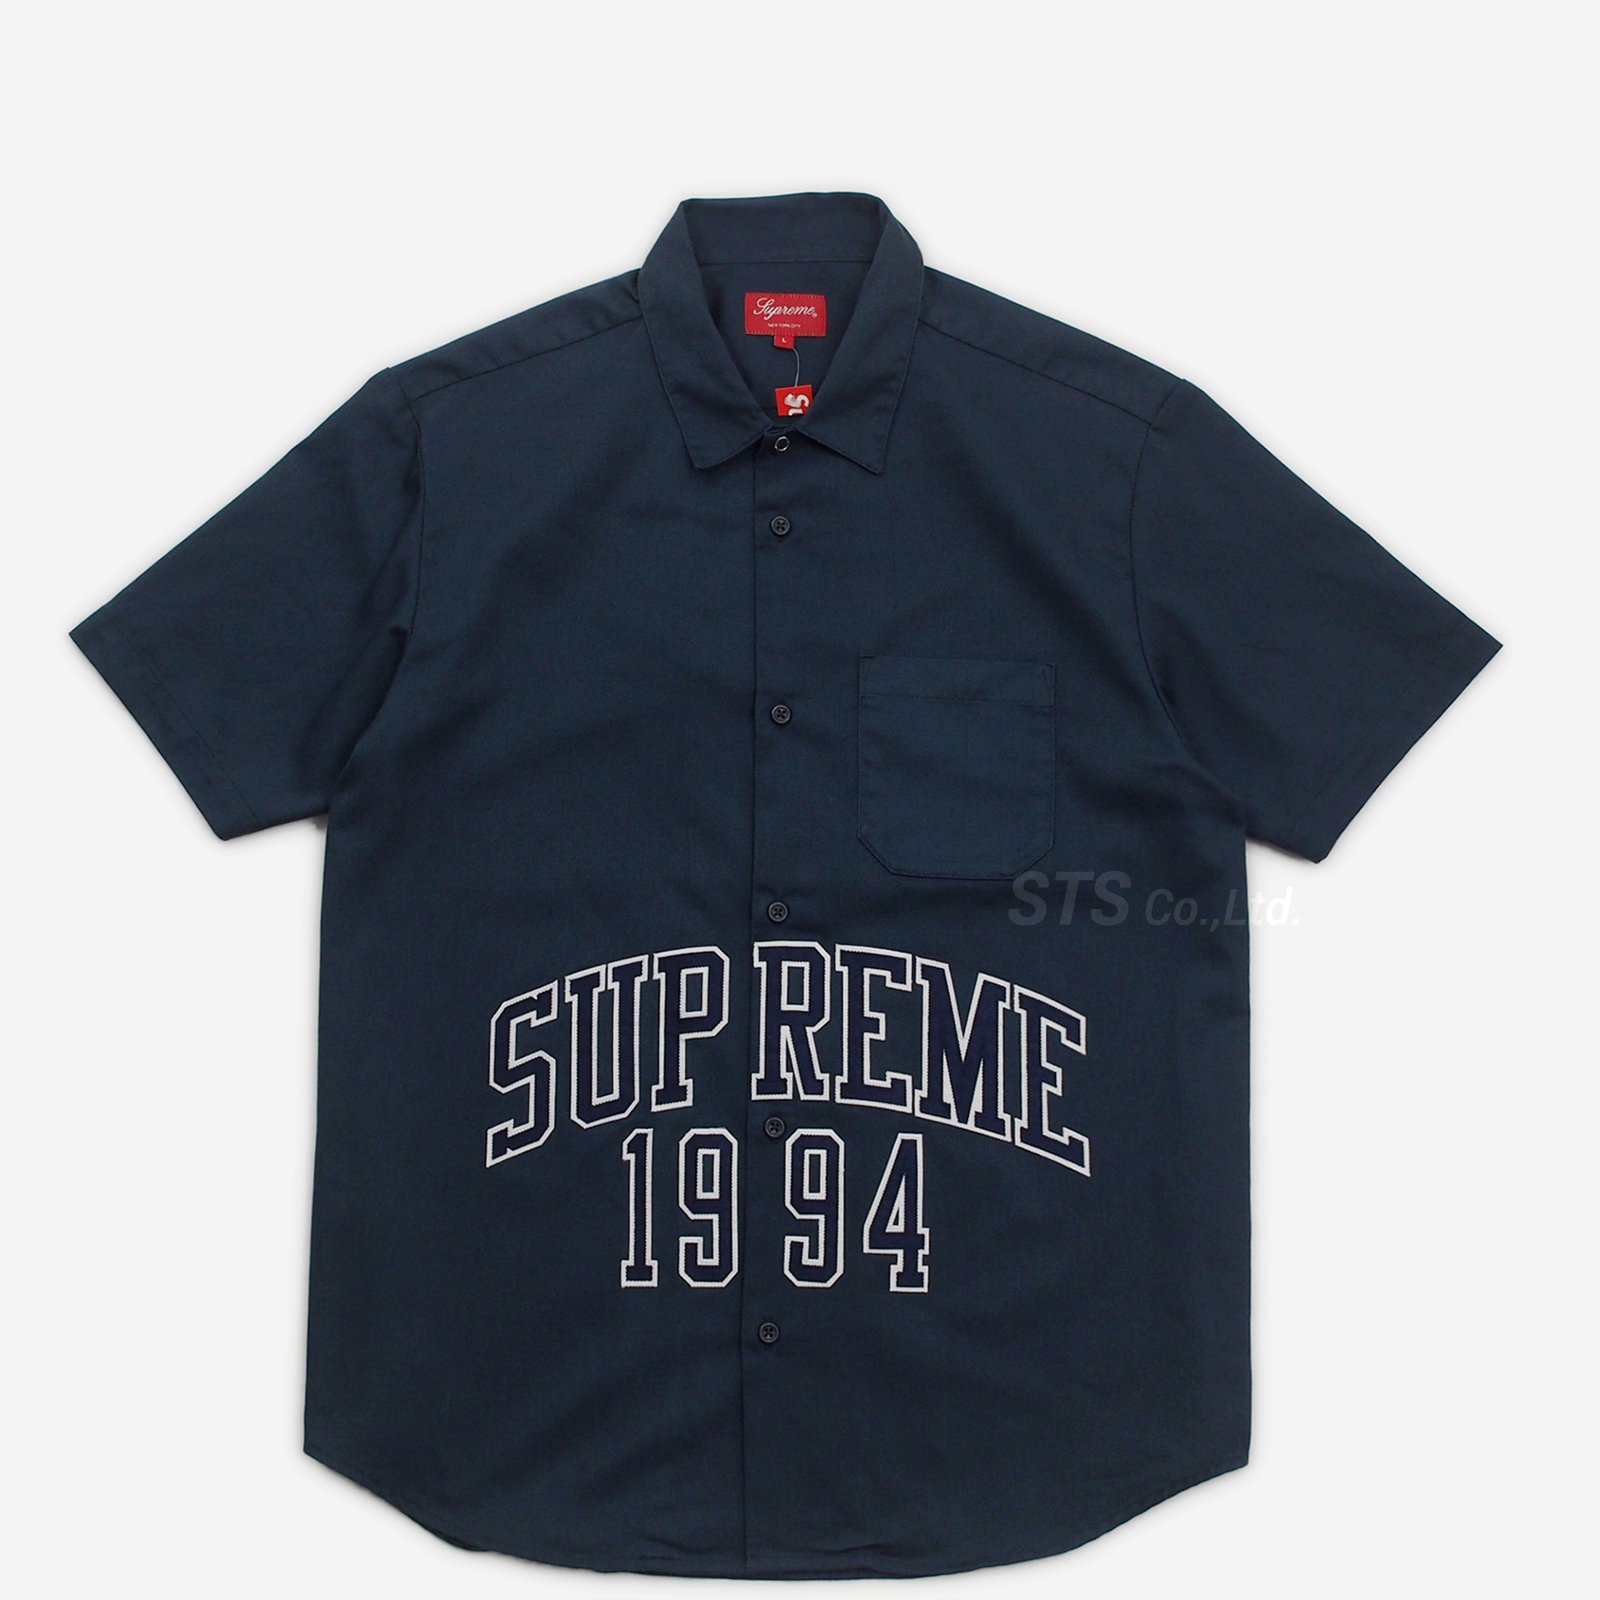 Supreme - Arc Logo S/S Work Shirt - UG.SHAFT